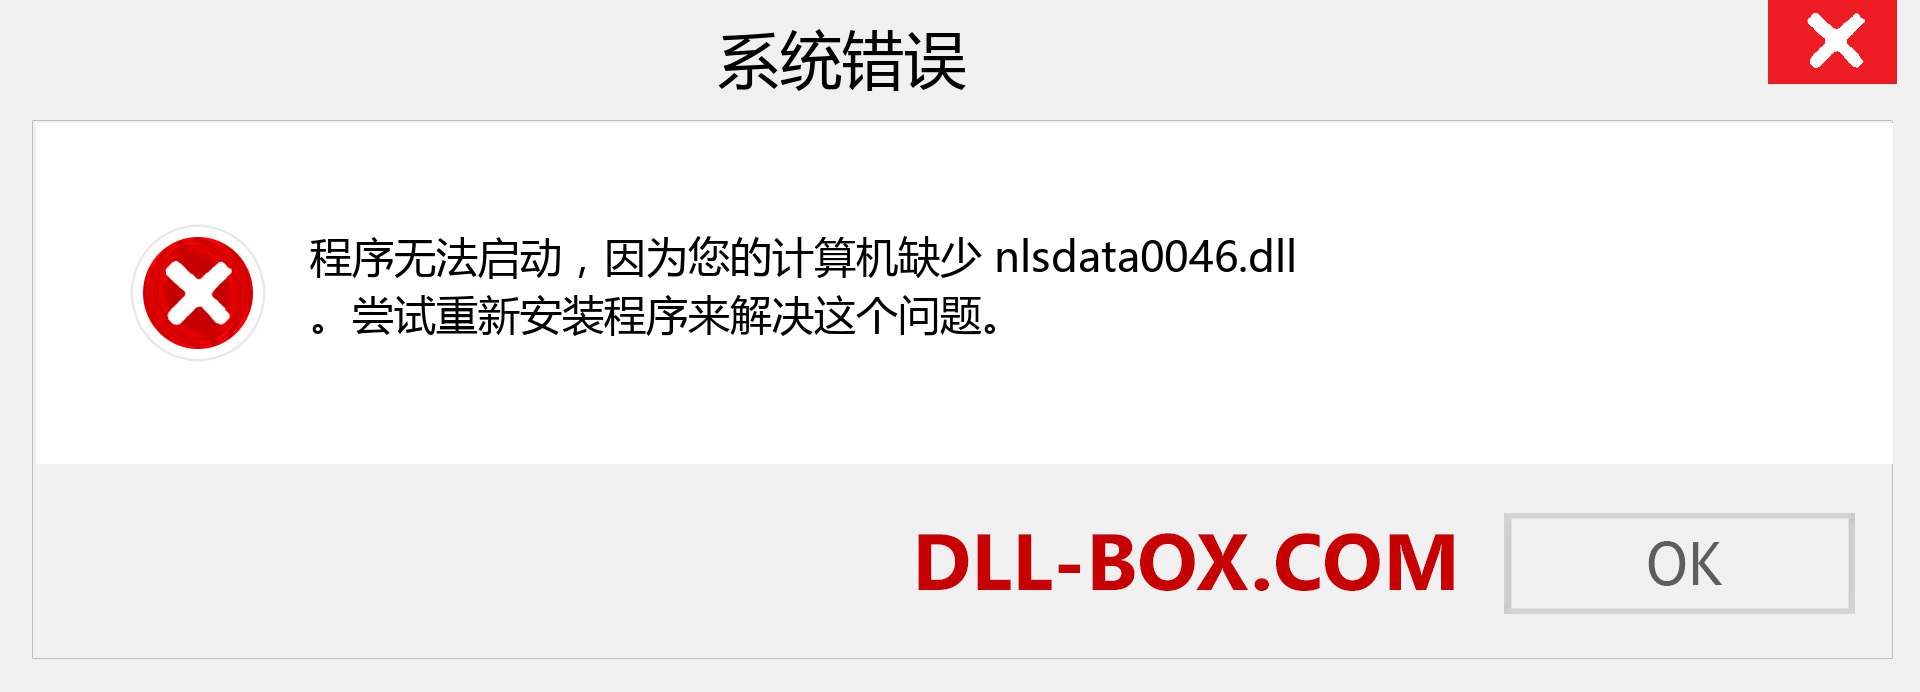 nlsdata0046.dll 文件丢失？。 适用于 Windows 7、8、10 的下载 - 修复 Windows、照片、图像上的 nlsdata0046 dll 丢失错误